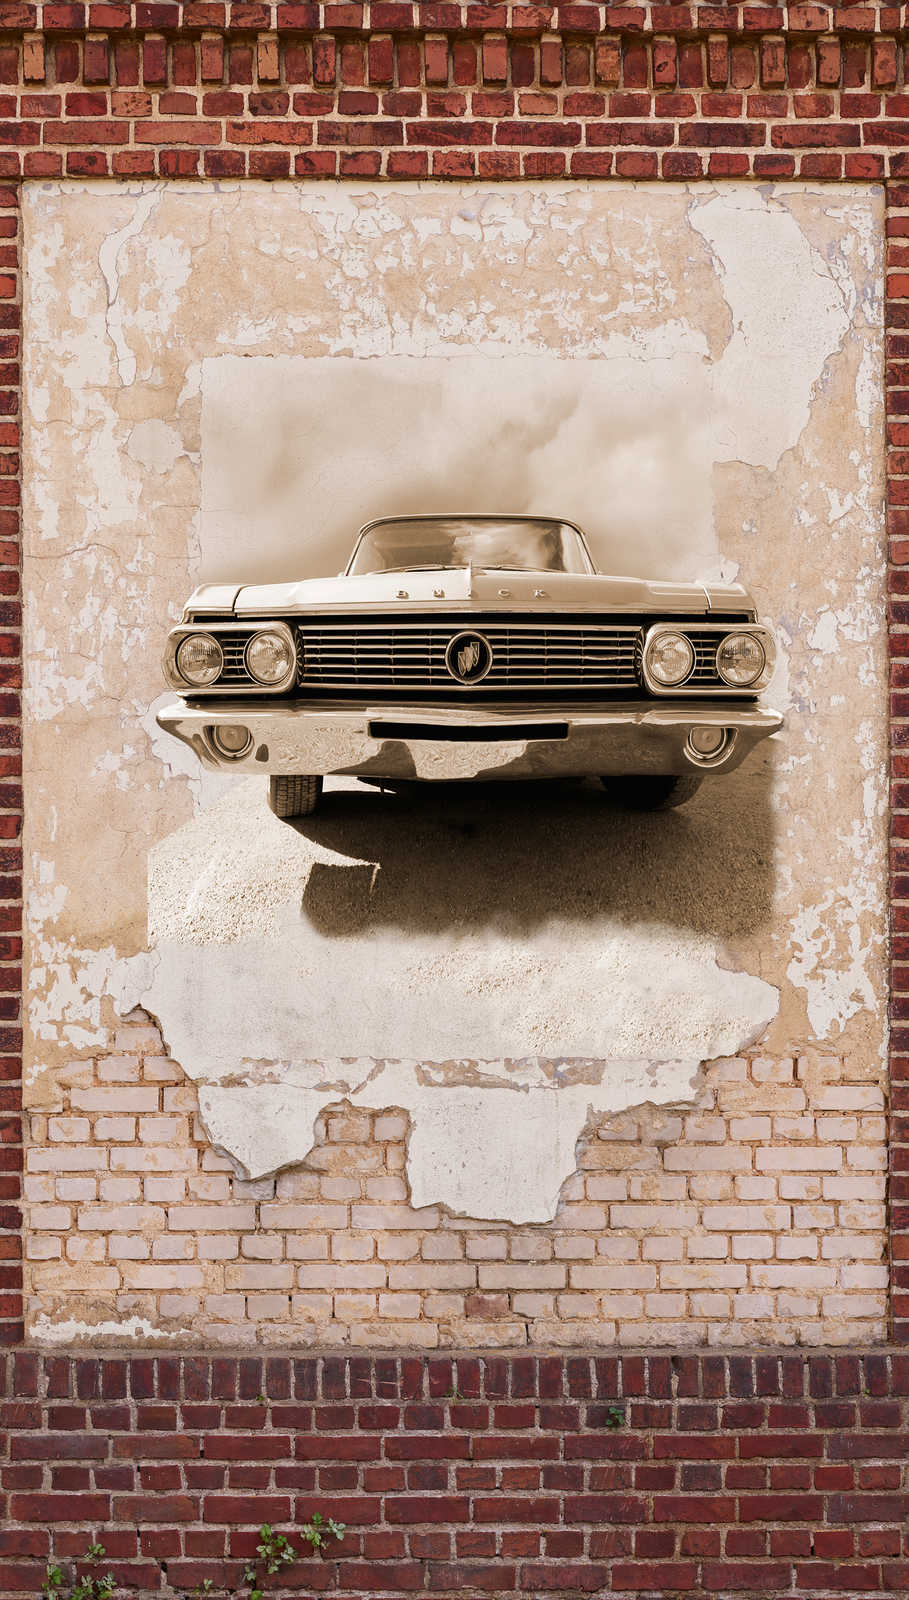             Tapete im Steinoptik Look mit Automotiv im Vintage Stil – Braun, Beige, Rot
        